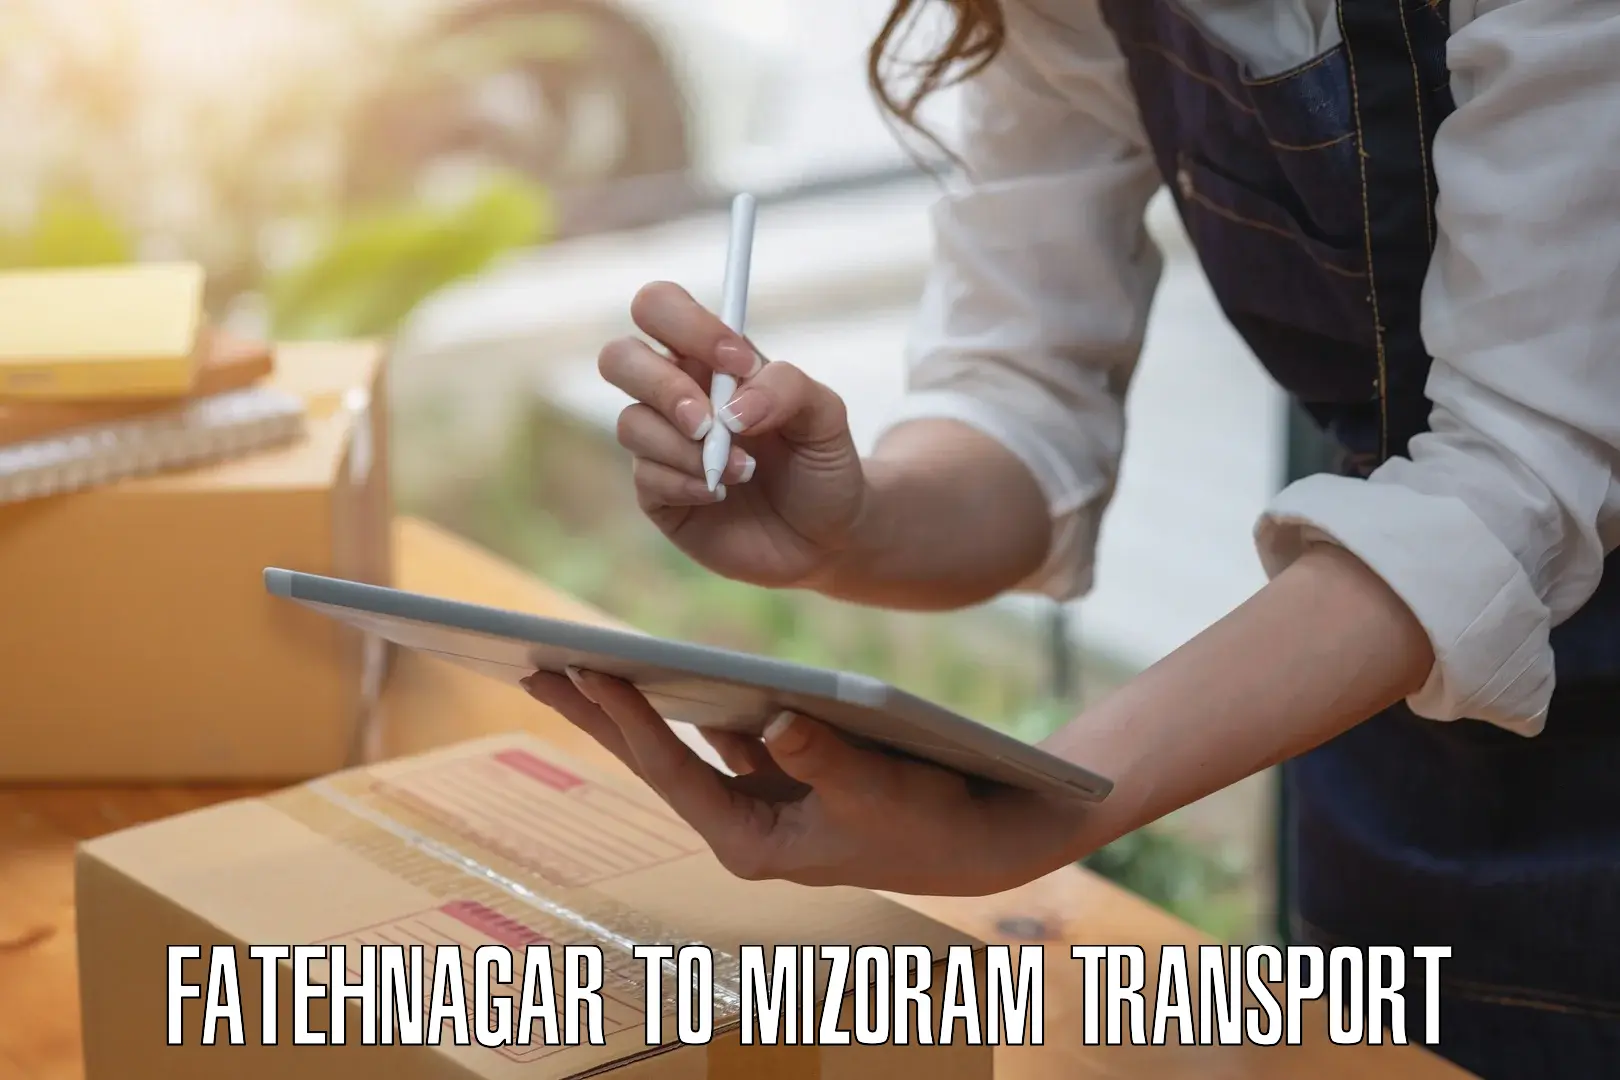 Road transport online services Fatehnagar to Thenzawl